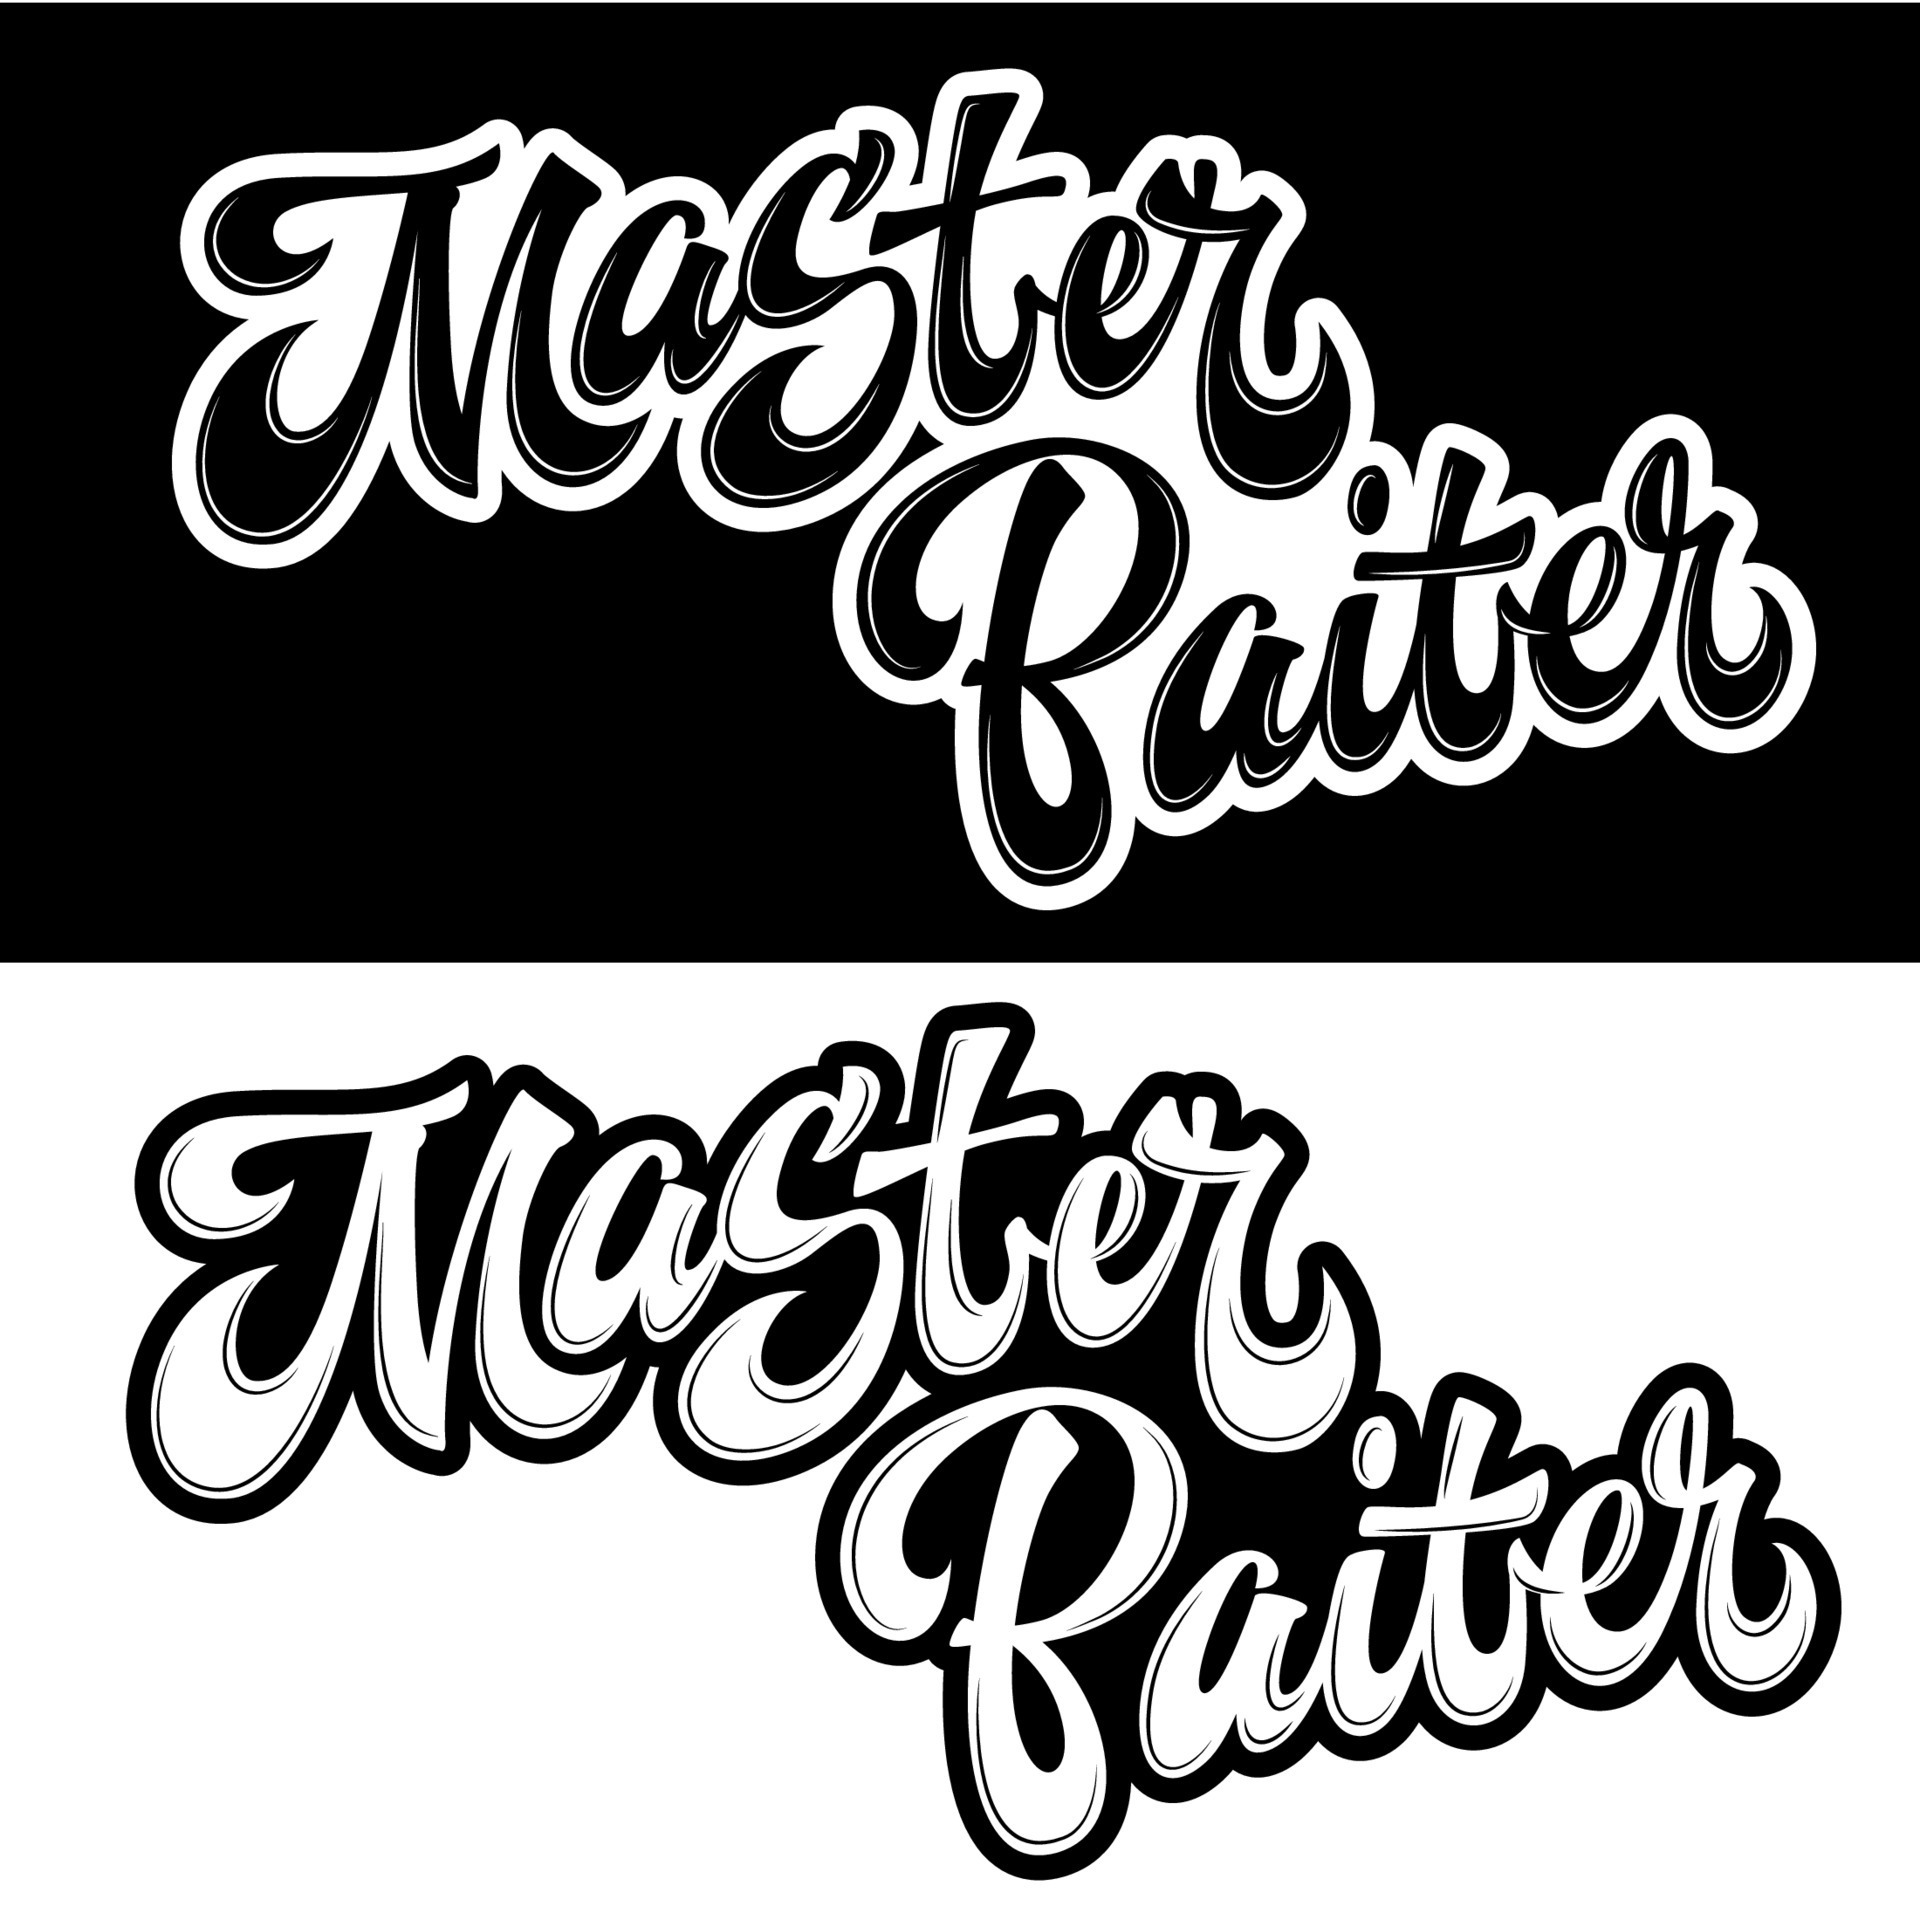 Master Baiter - set of hand drawn lettering logo phrase. 24224323